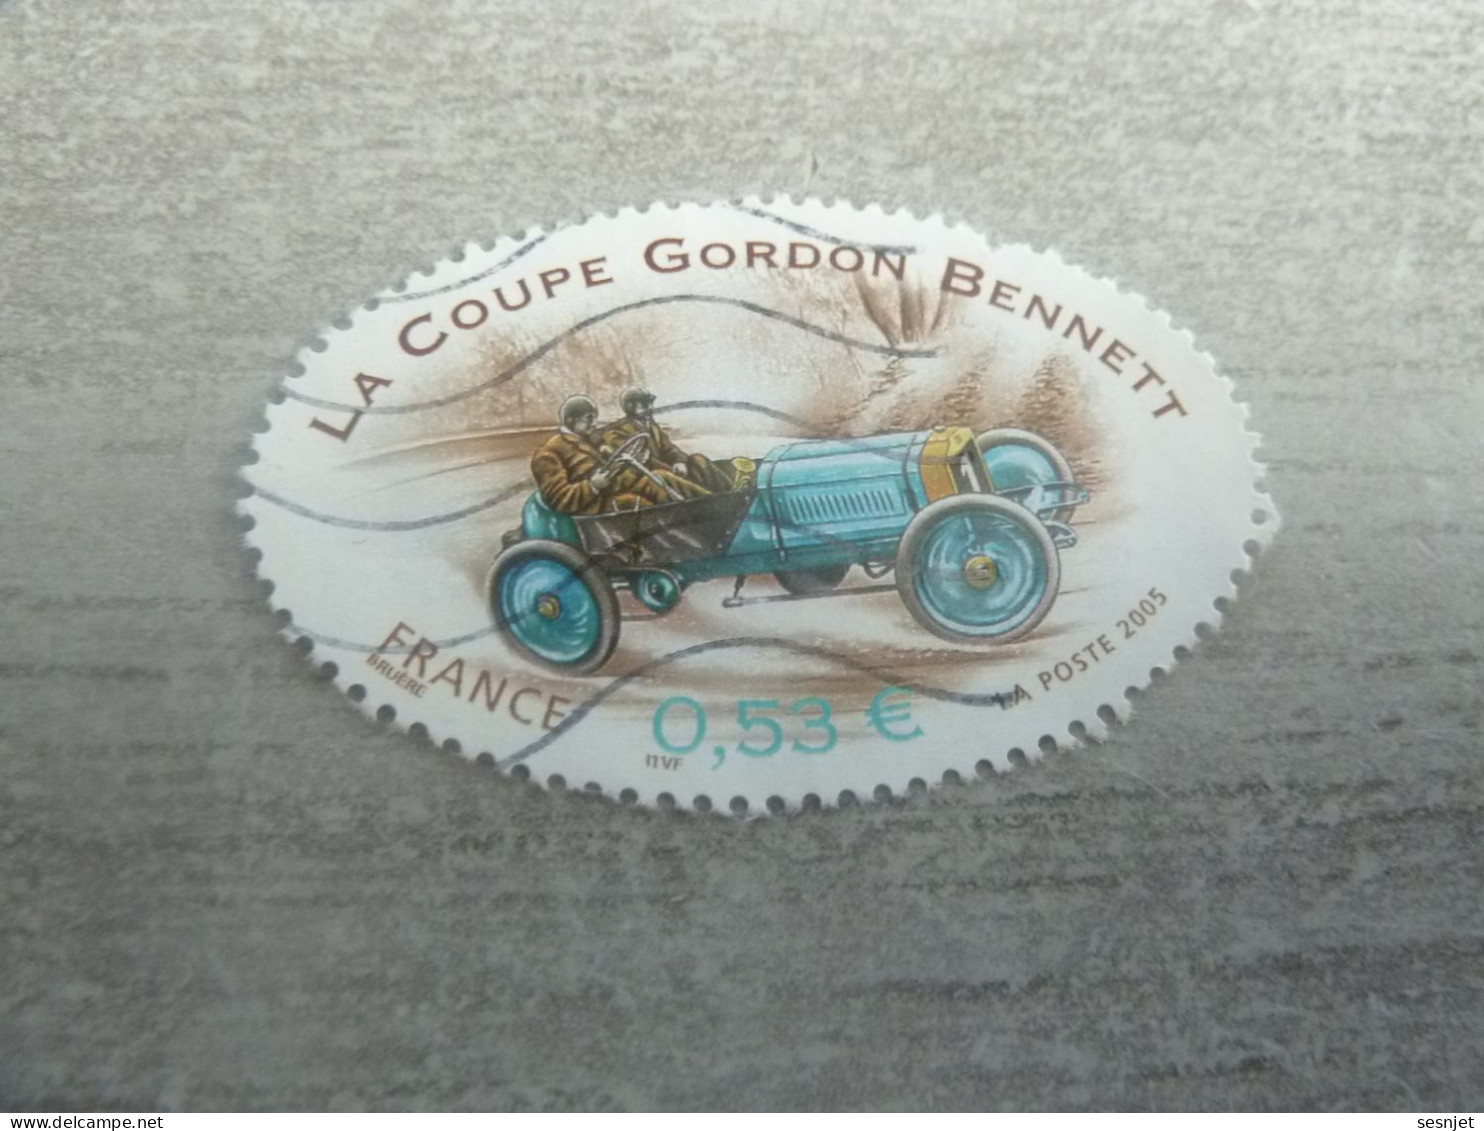 Coupe Gordon Bennet - Voiture De Course Richard Brasier - 0.53 € - Yt 3795 - Multicolore - Oblitéré - Année 2005 - - Automobile